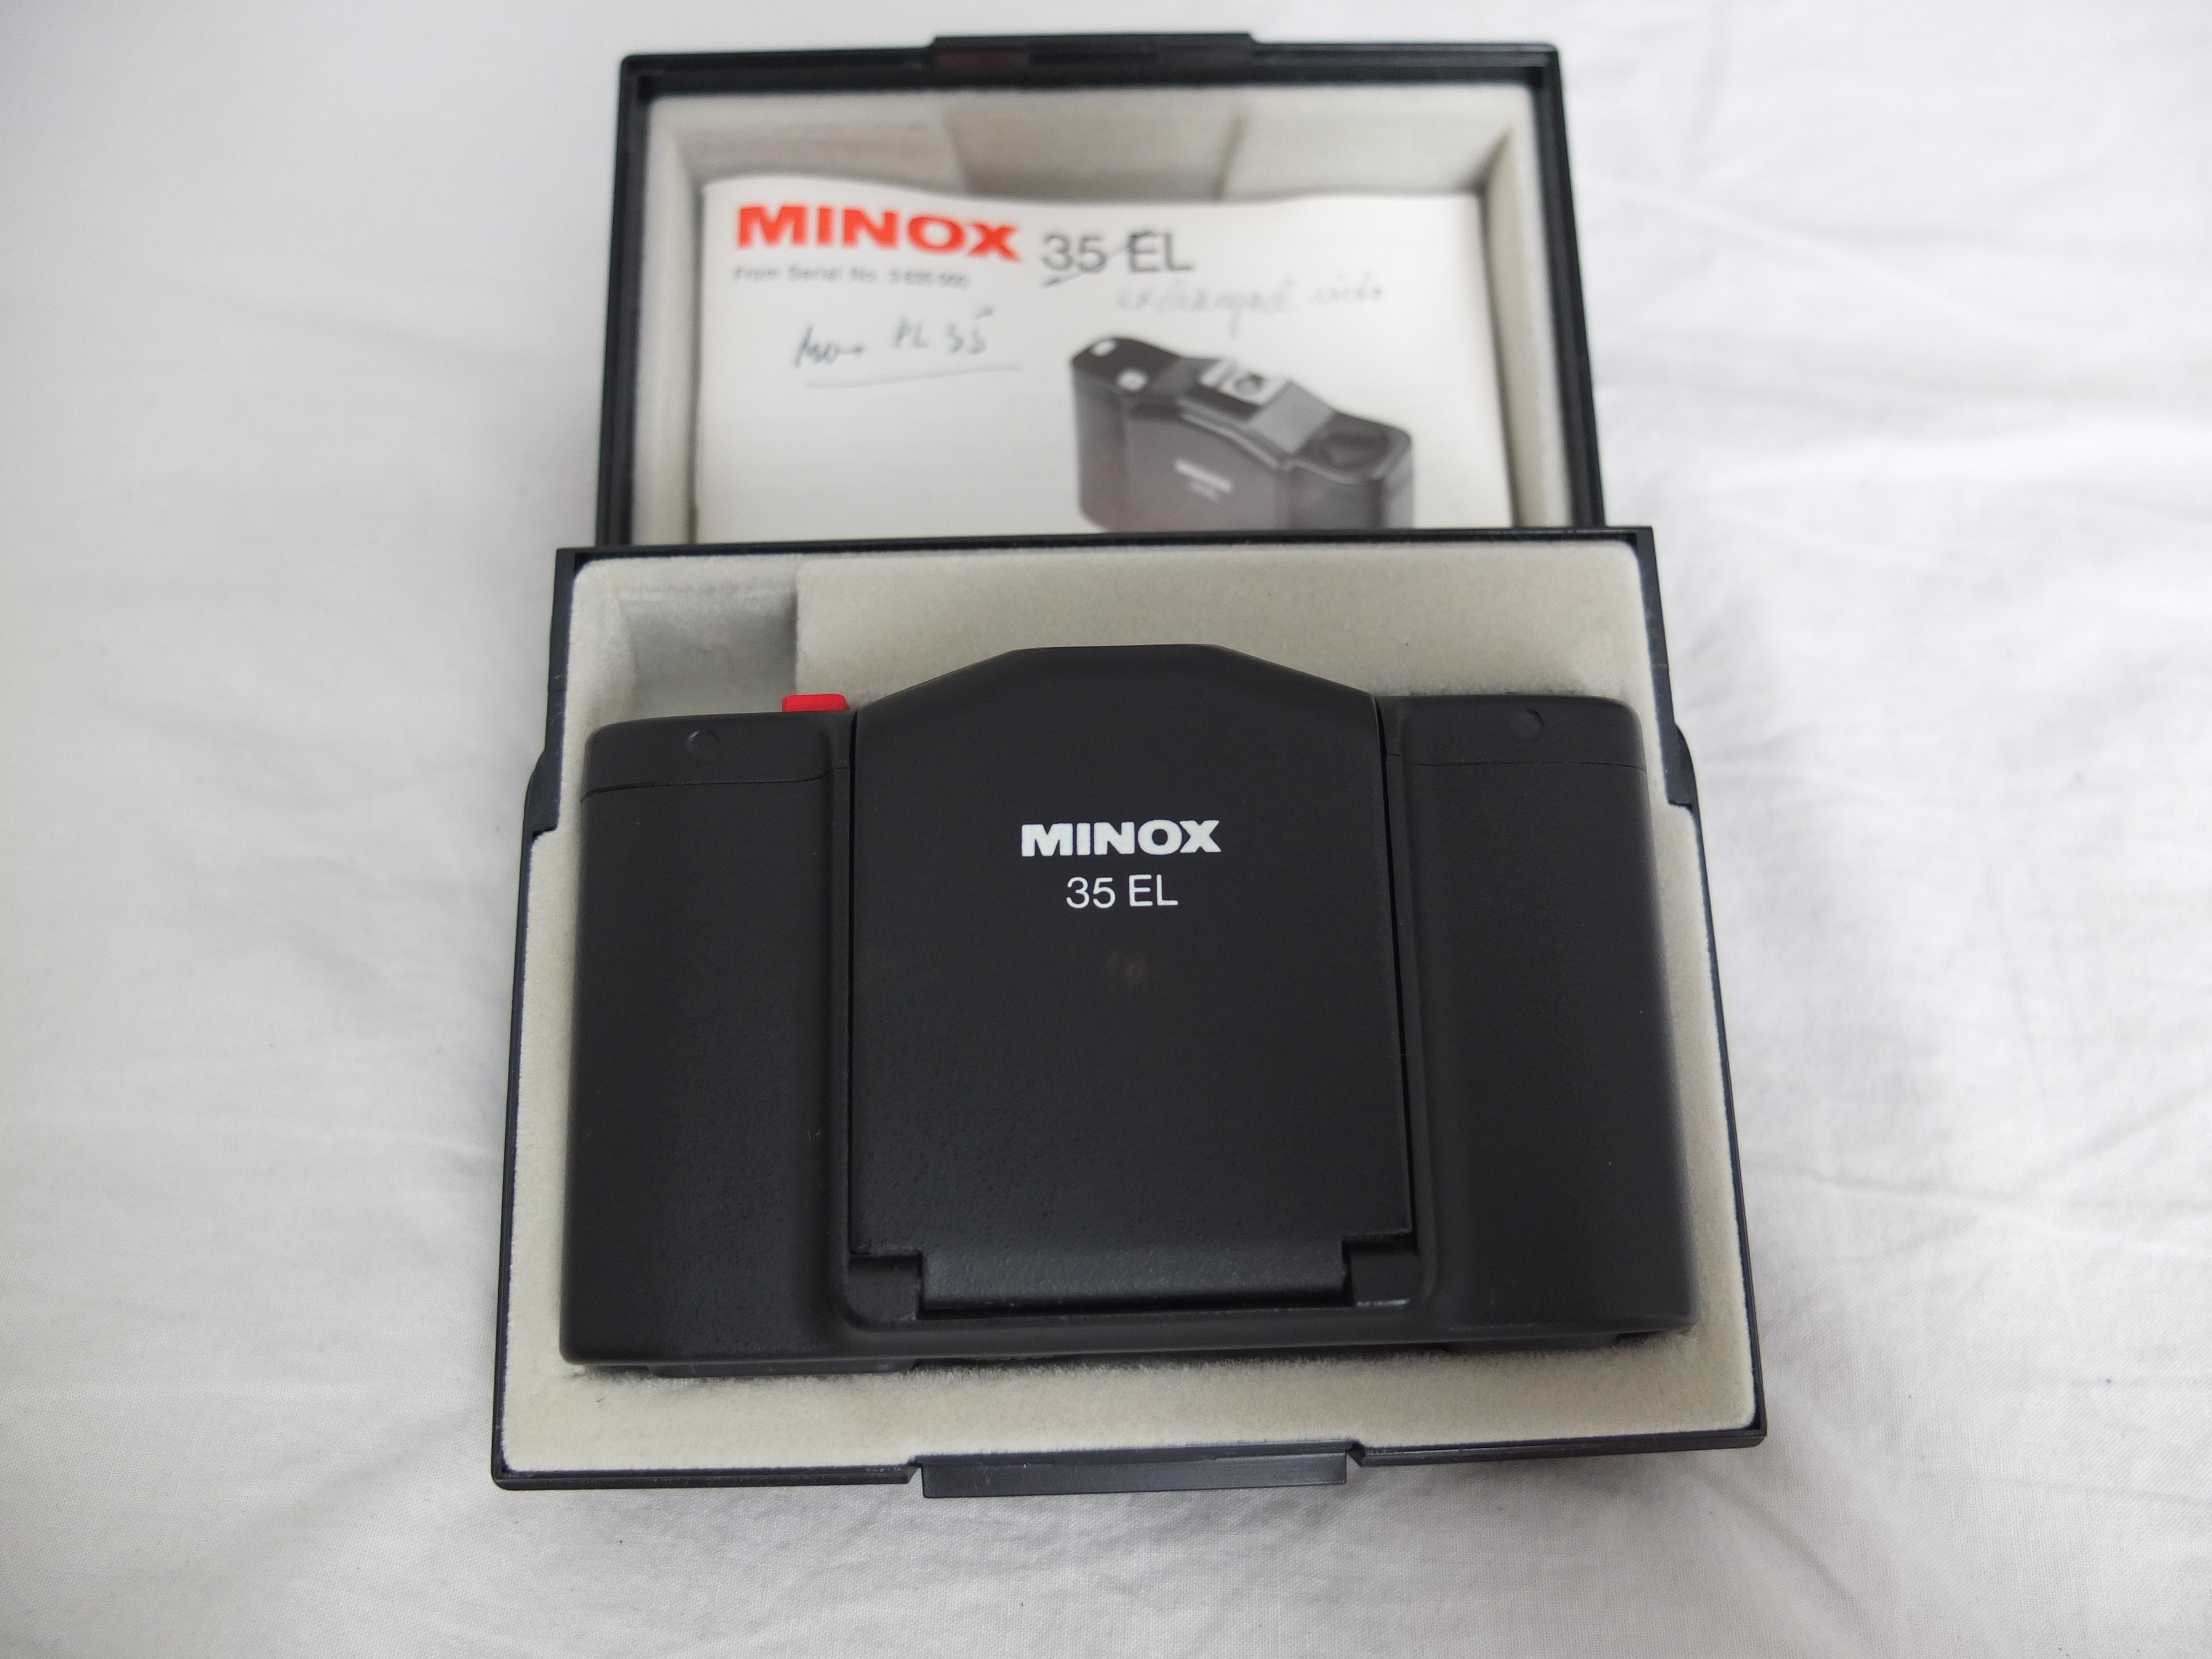  美乐时Minox 35 GT  MB PL GL  EL最小135旁轴胶片相机德国产 